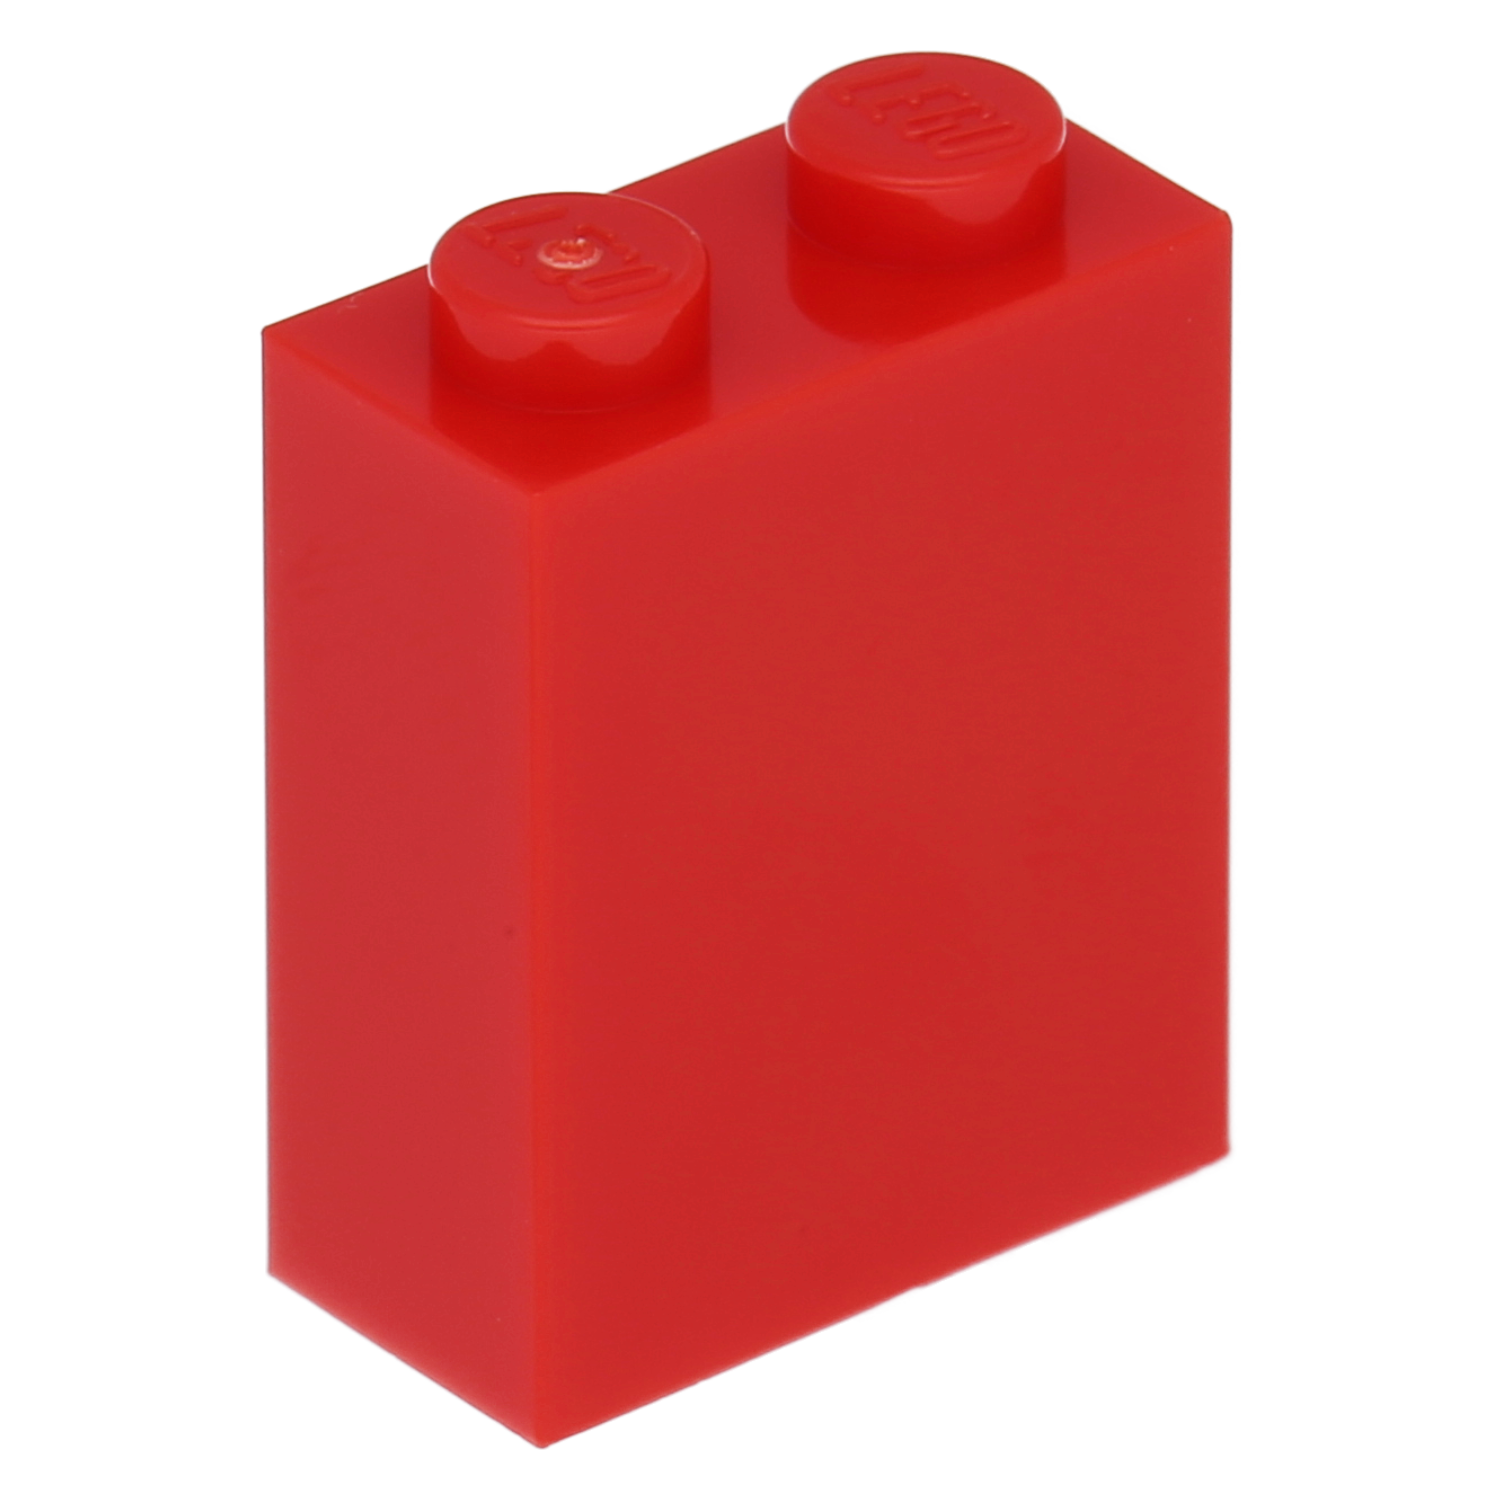 LEGO Steine (modifiziert) - 1 x 2 x 2 mit Innenständerhalter